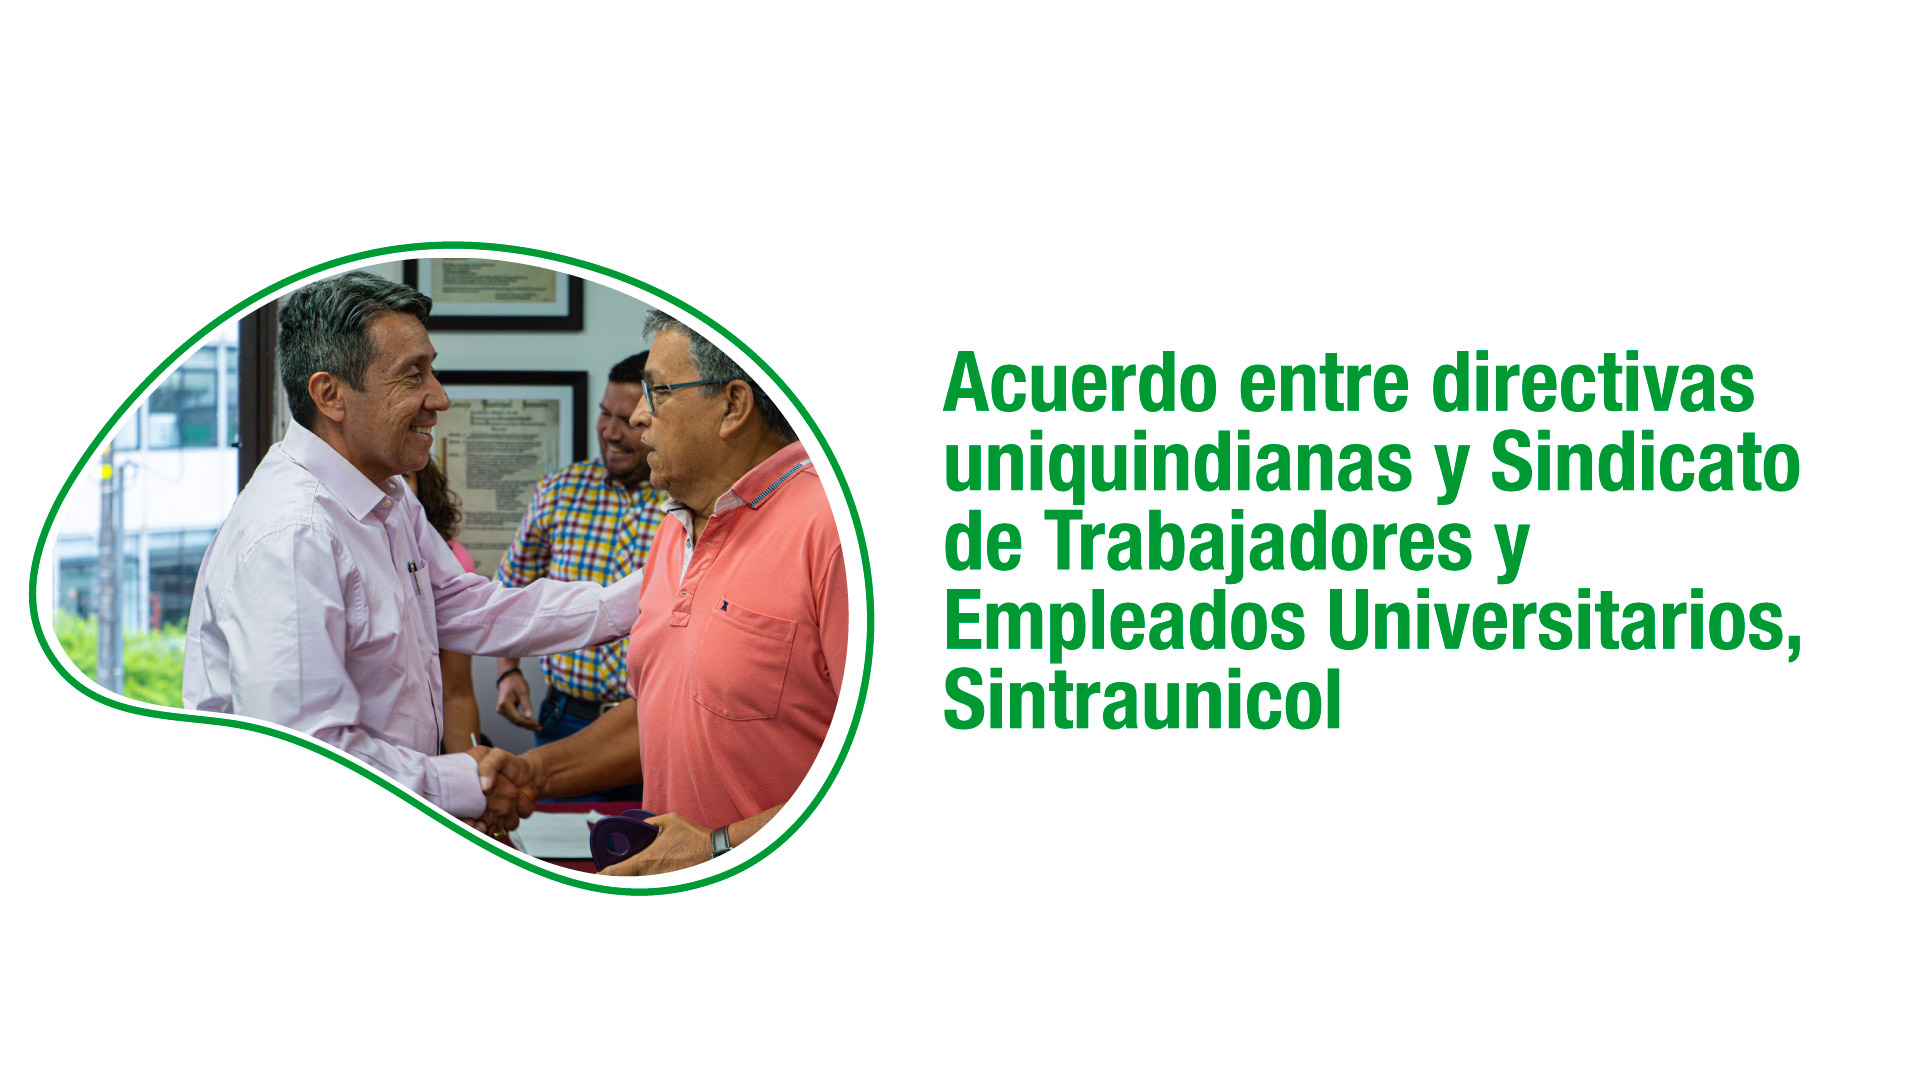 Acuerdo entre directivas uniquindianas y Sindicato de Trabajadores y Empleados Universitarios, Sintraunicol